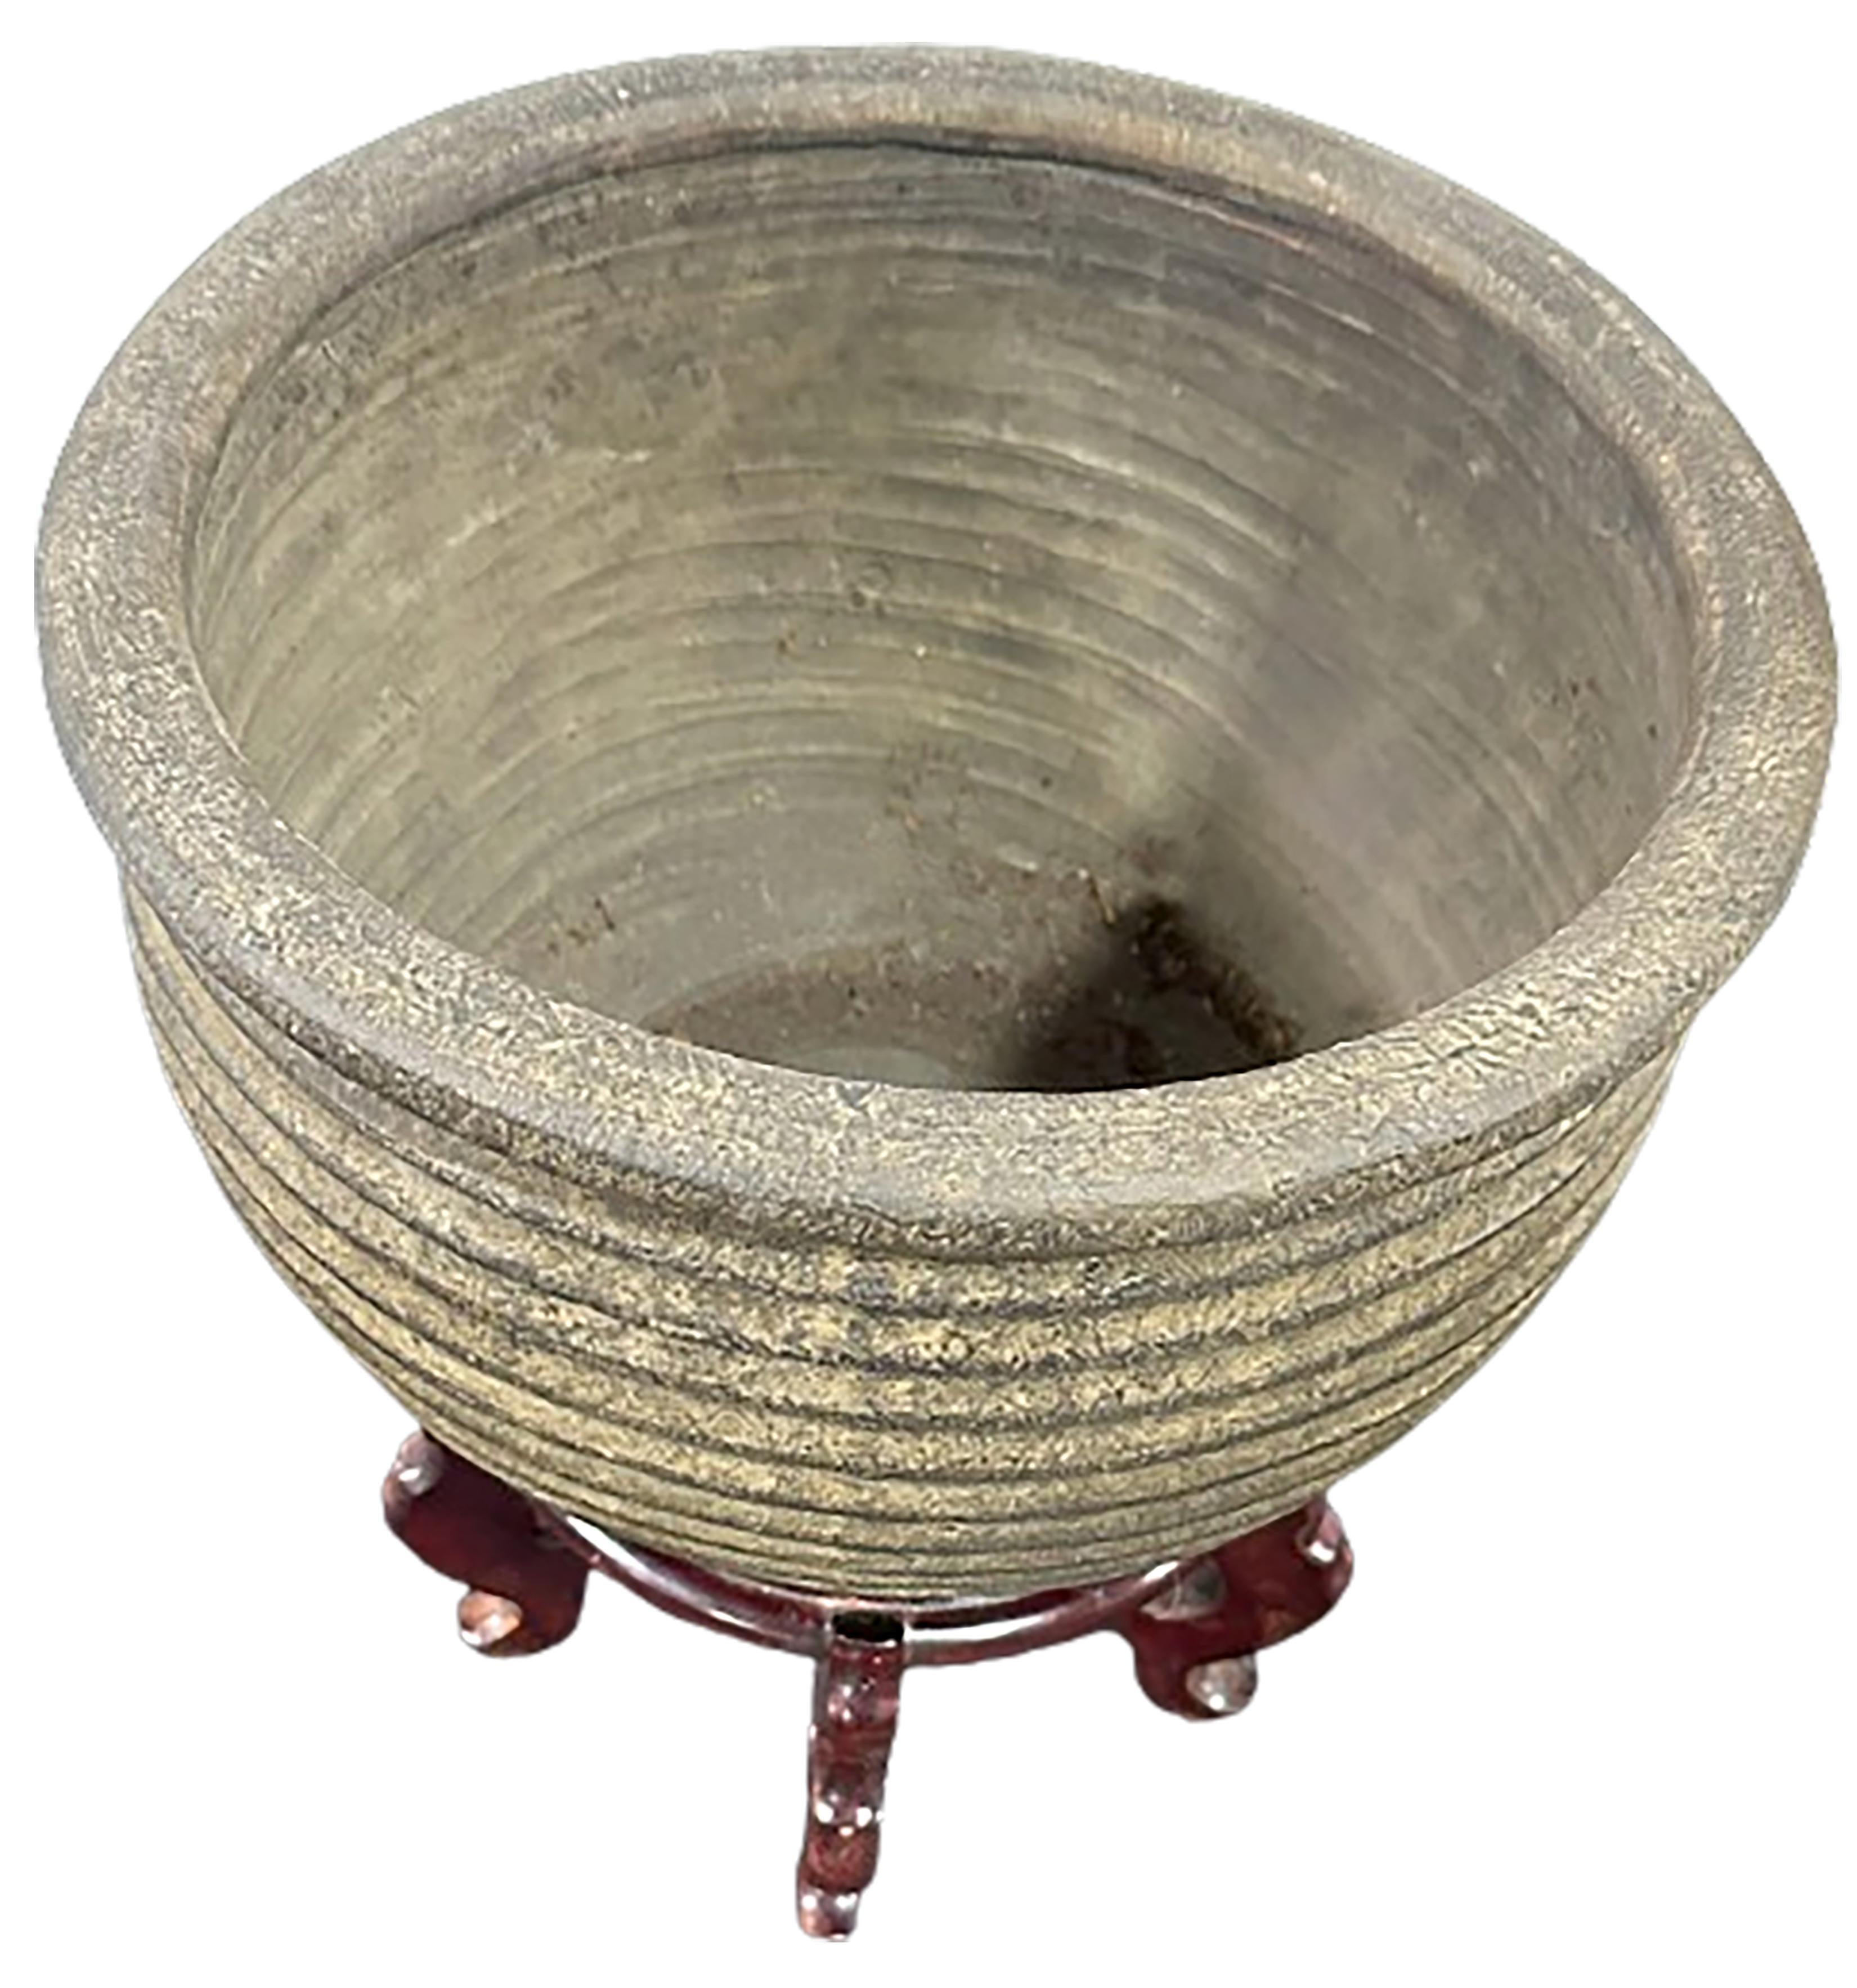 Ein hübscher antiker Terrakotta-Pflanzkübel mit einer geschnitzten Vase aus Kirschholz mit chinesisch lackiertem Sockel.

In sehr gutem Zustand. Einige leichte Abnutzungserscheinungen, die dem Alter und dem Gebrauch entsprechen.

Keine